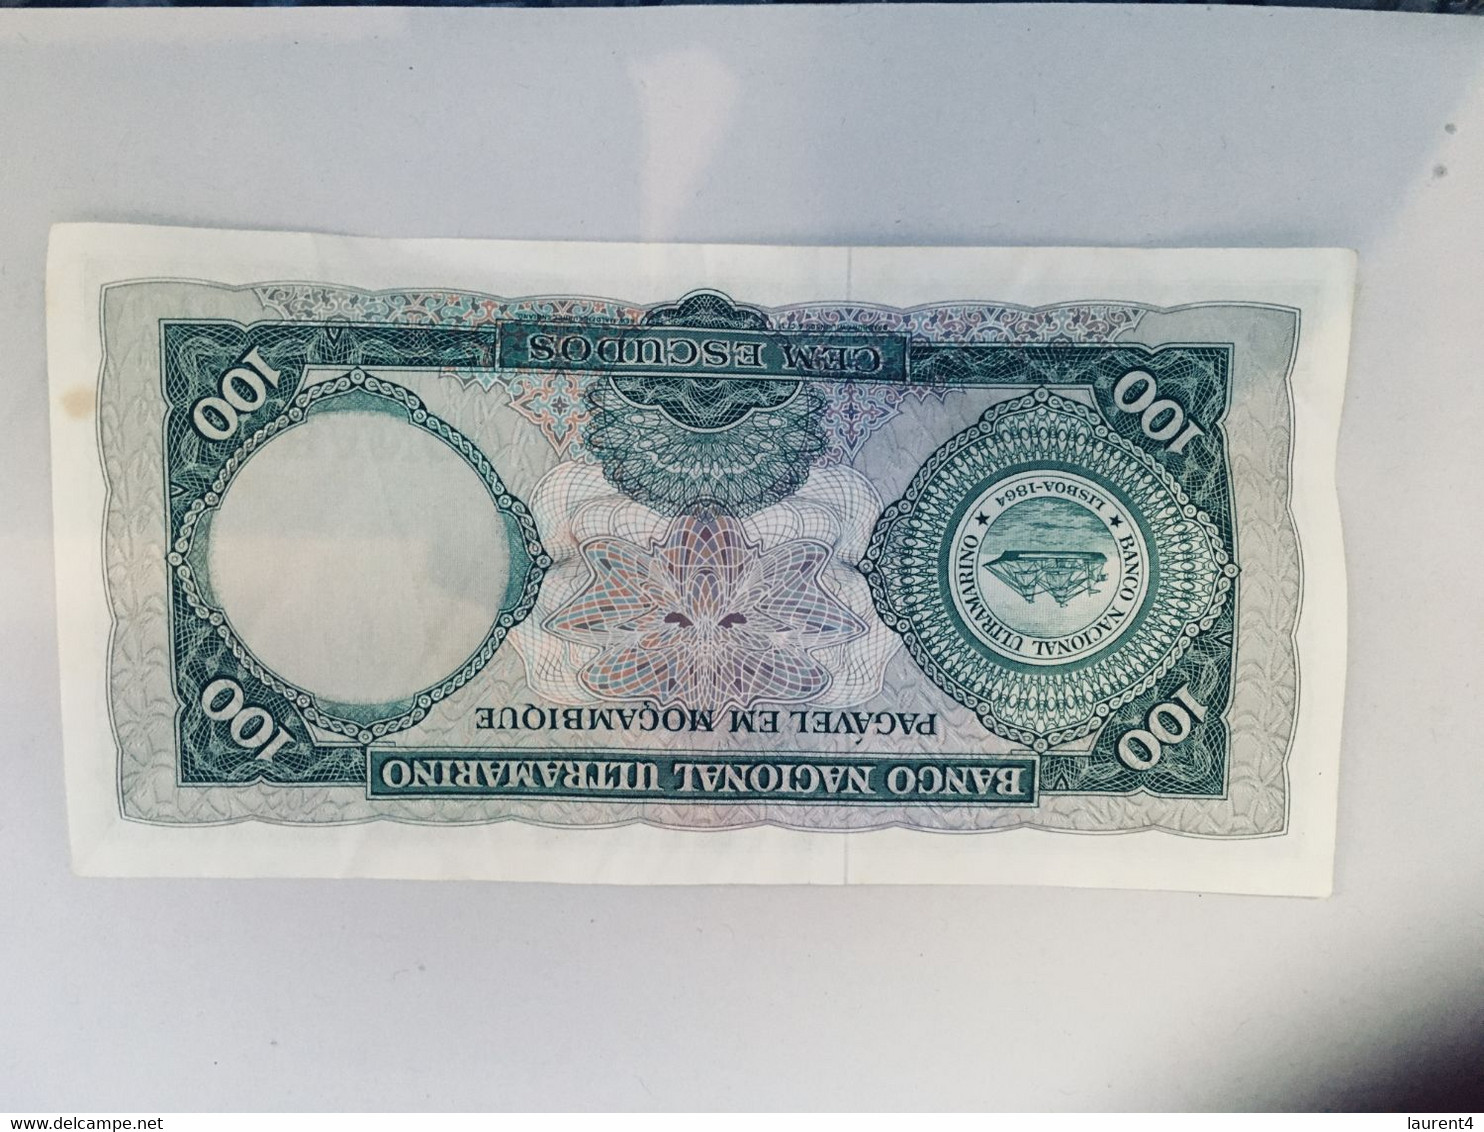 (S - 19/5/2020) Mozembique Banknote (100) - Mozambique